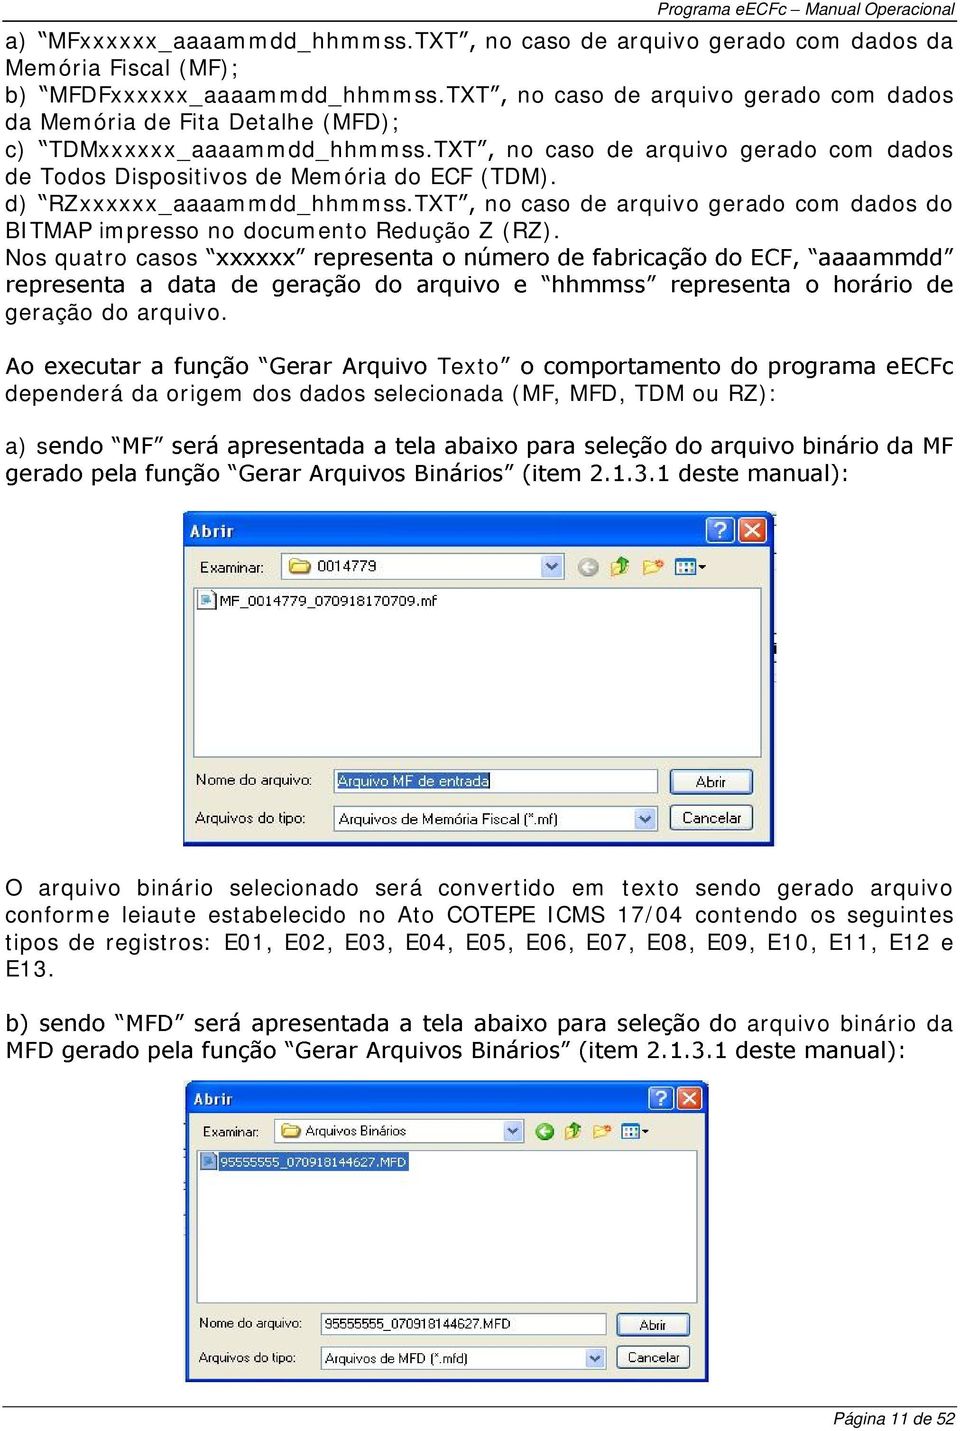 d) RZxxxxxx_aaaammdd_hhmmss.TXT no caso de arquivo gerado com dados do BITMAP impresso no documento Redução Z (RZ). Nos quatro casos geração do arquivo.